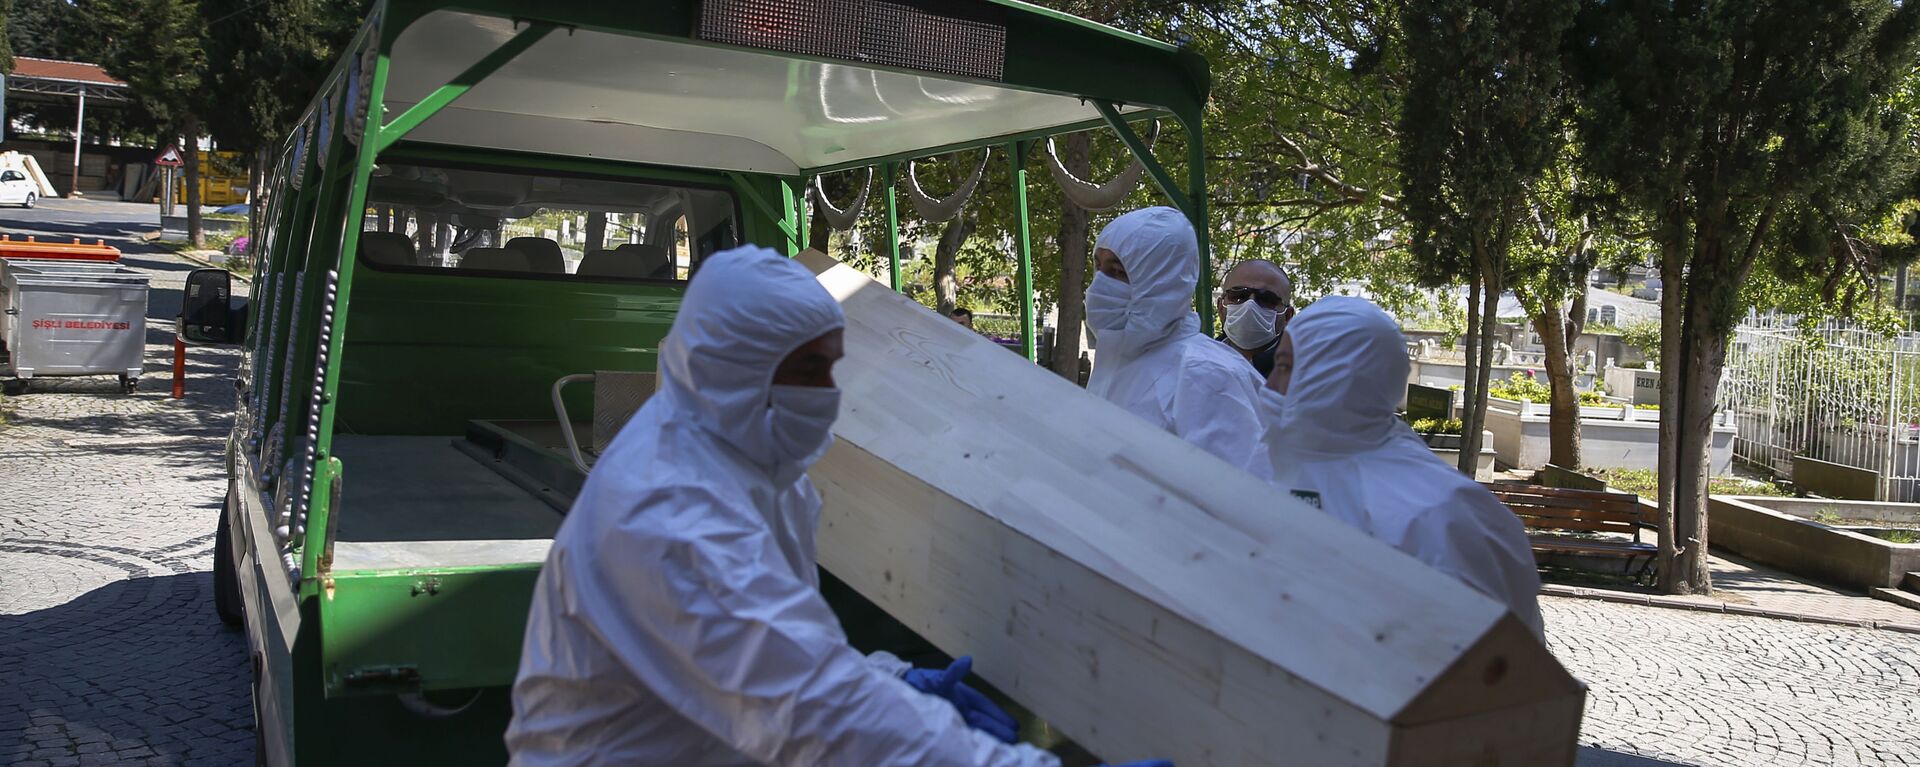 Работники морга погружают гроб с погибшим от коронавируса, архивное фото - Sputnik Тоҷикистон, 1920, 04.07.2021